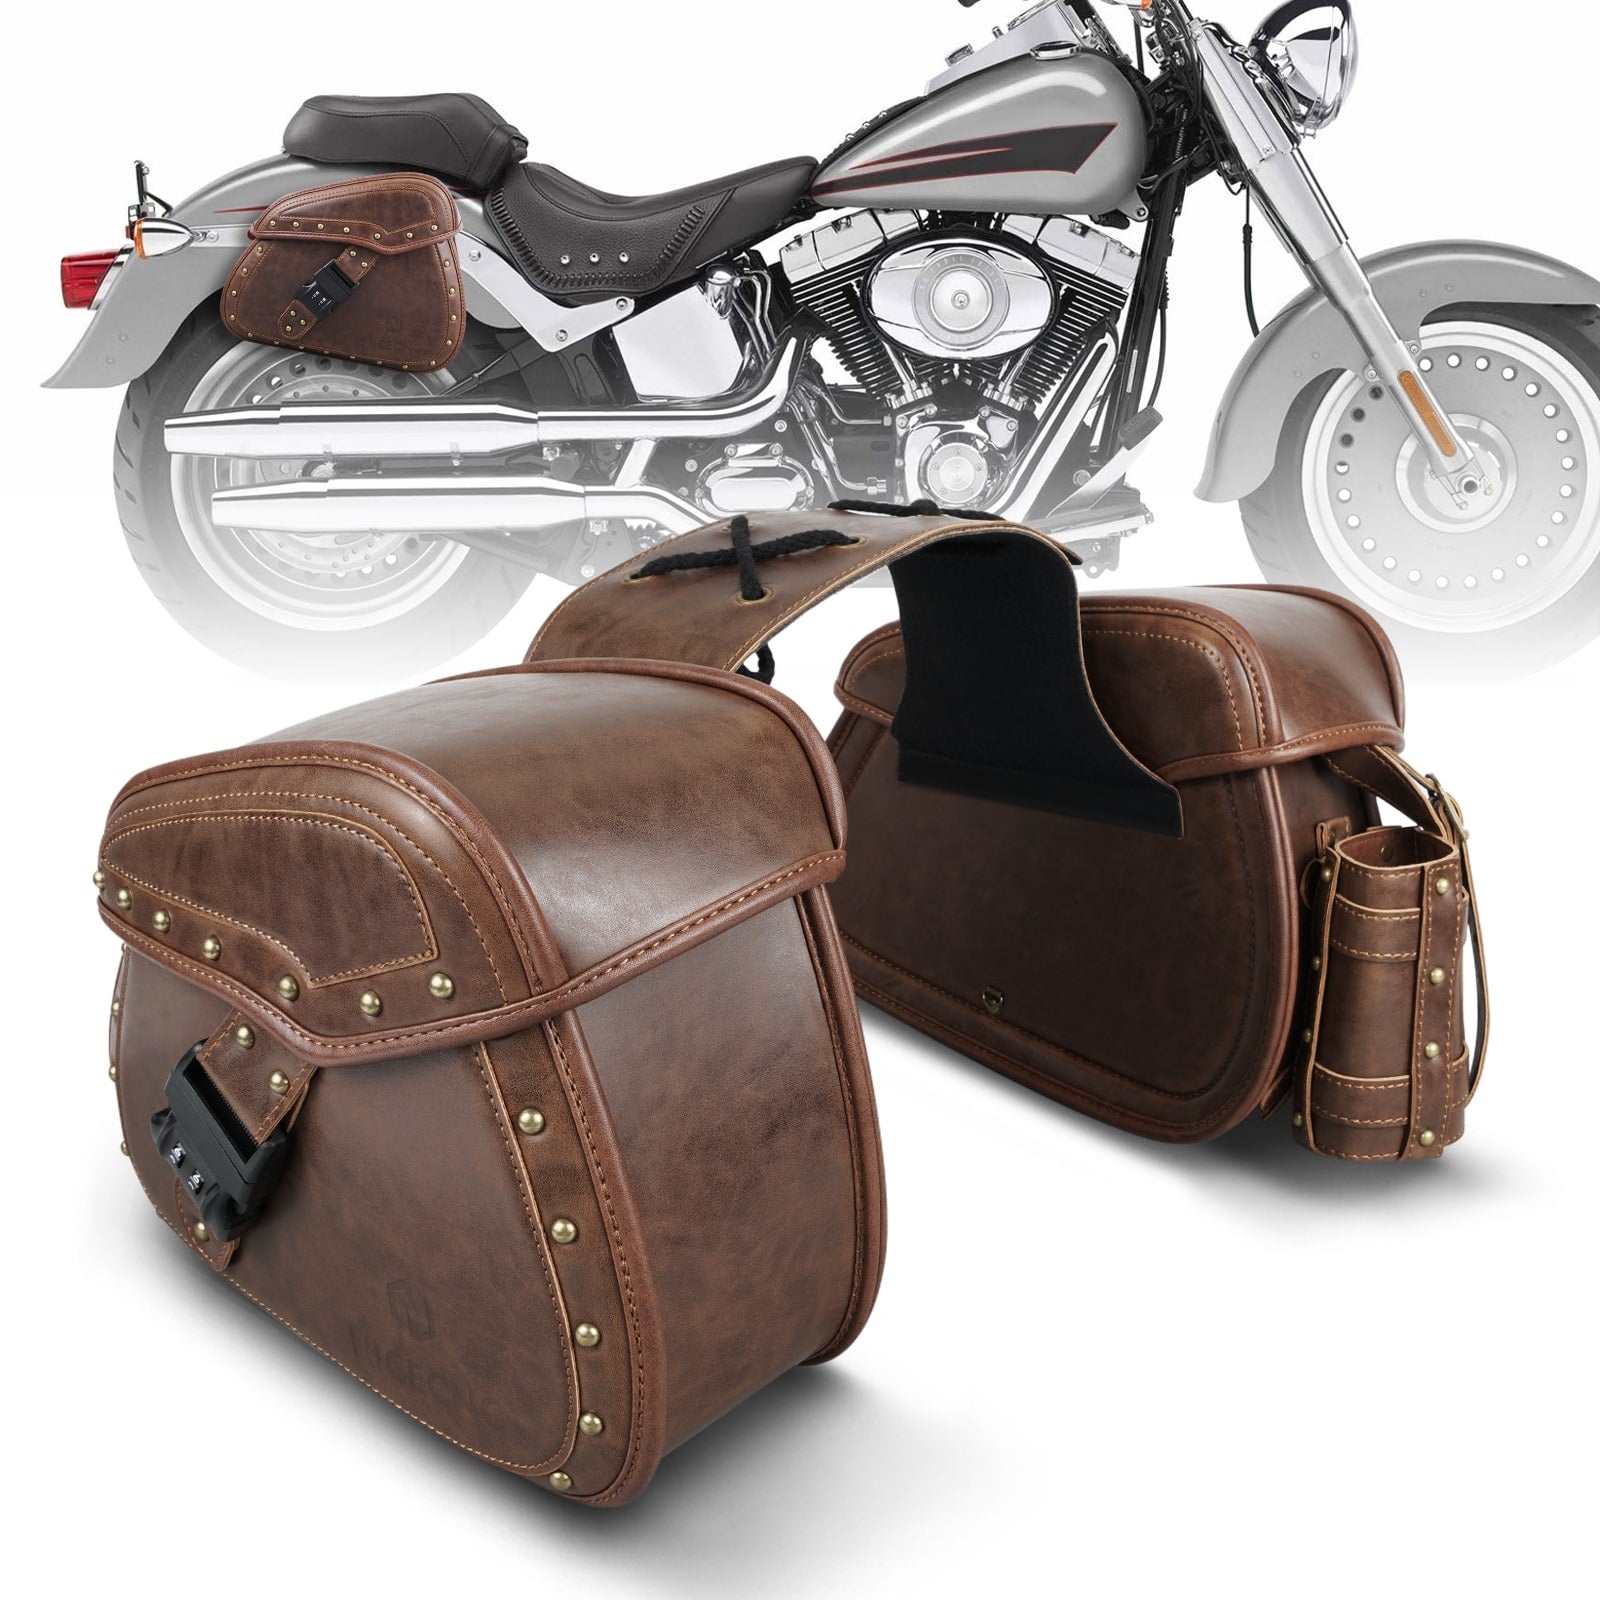 Harley-Davidson Softail Parts & Accessories